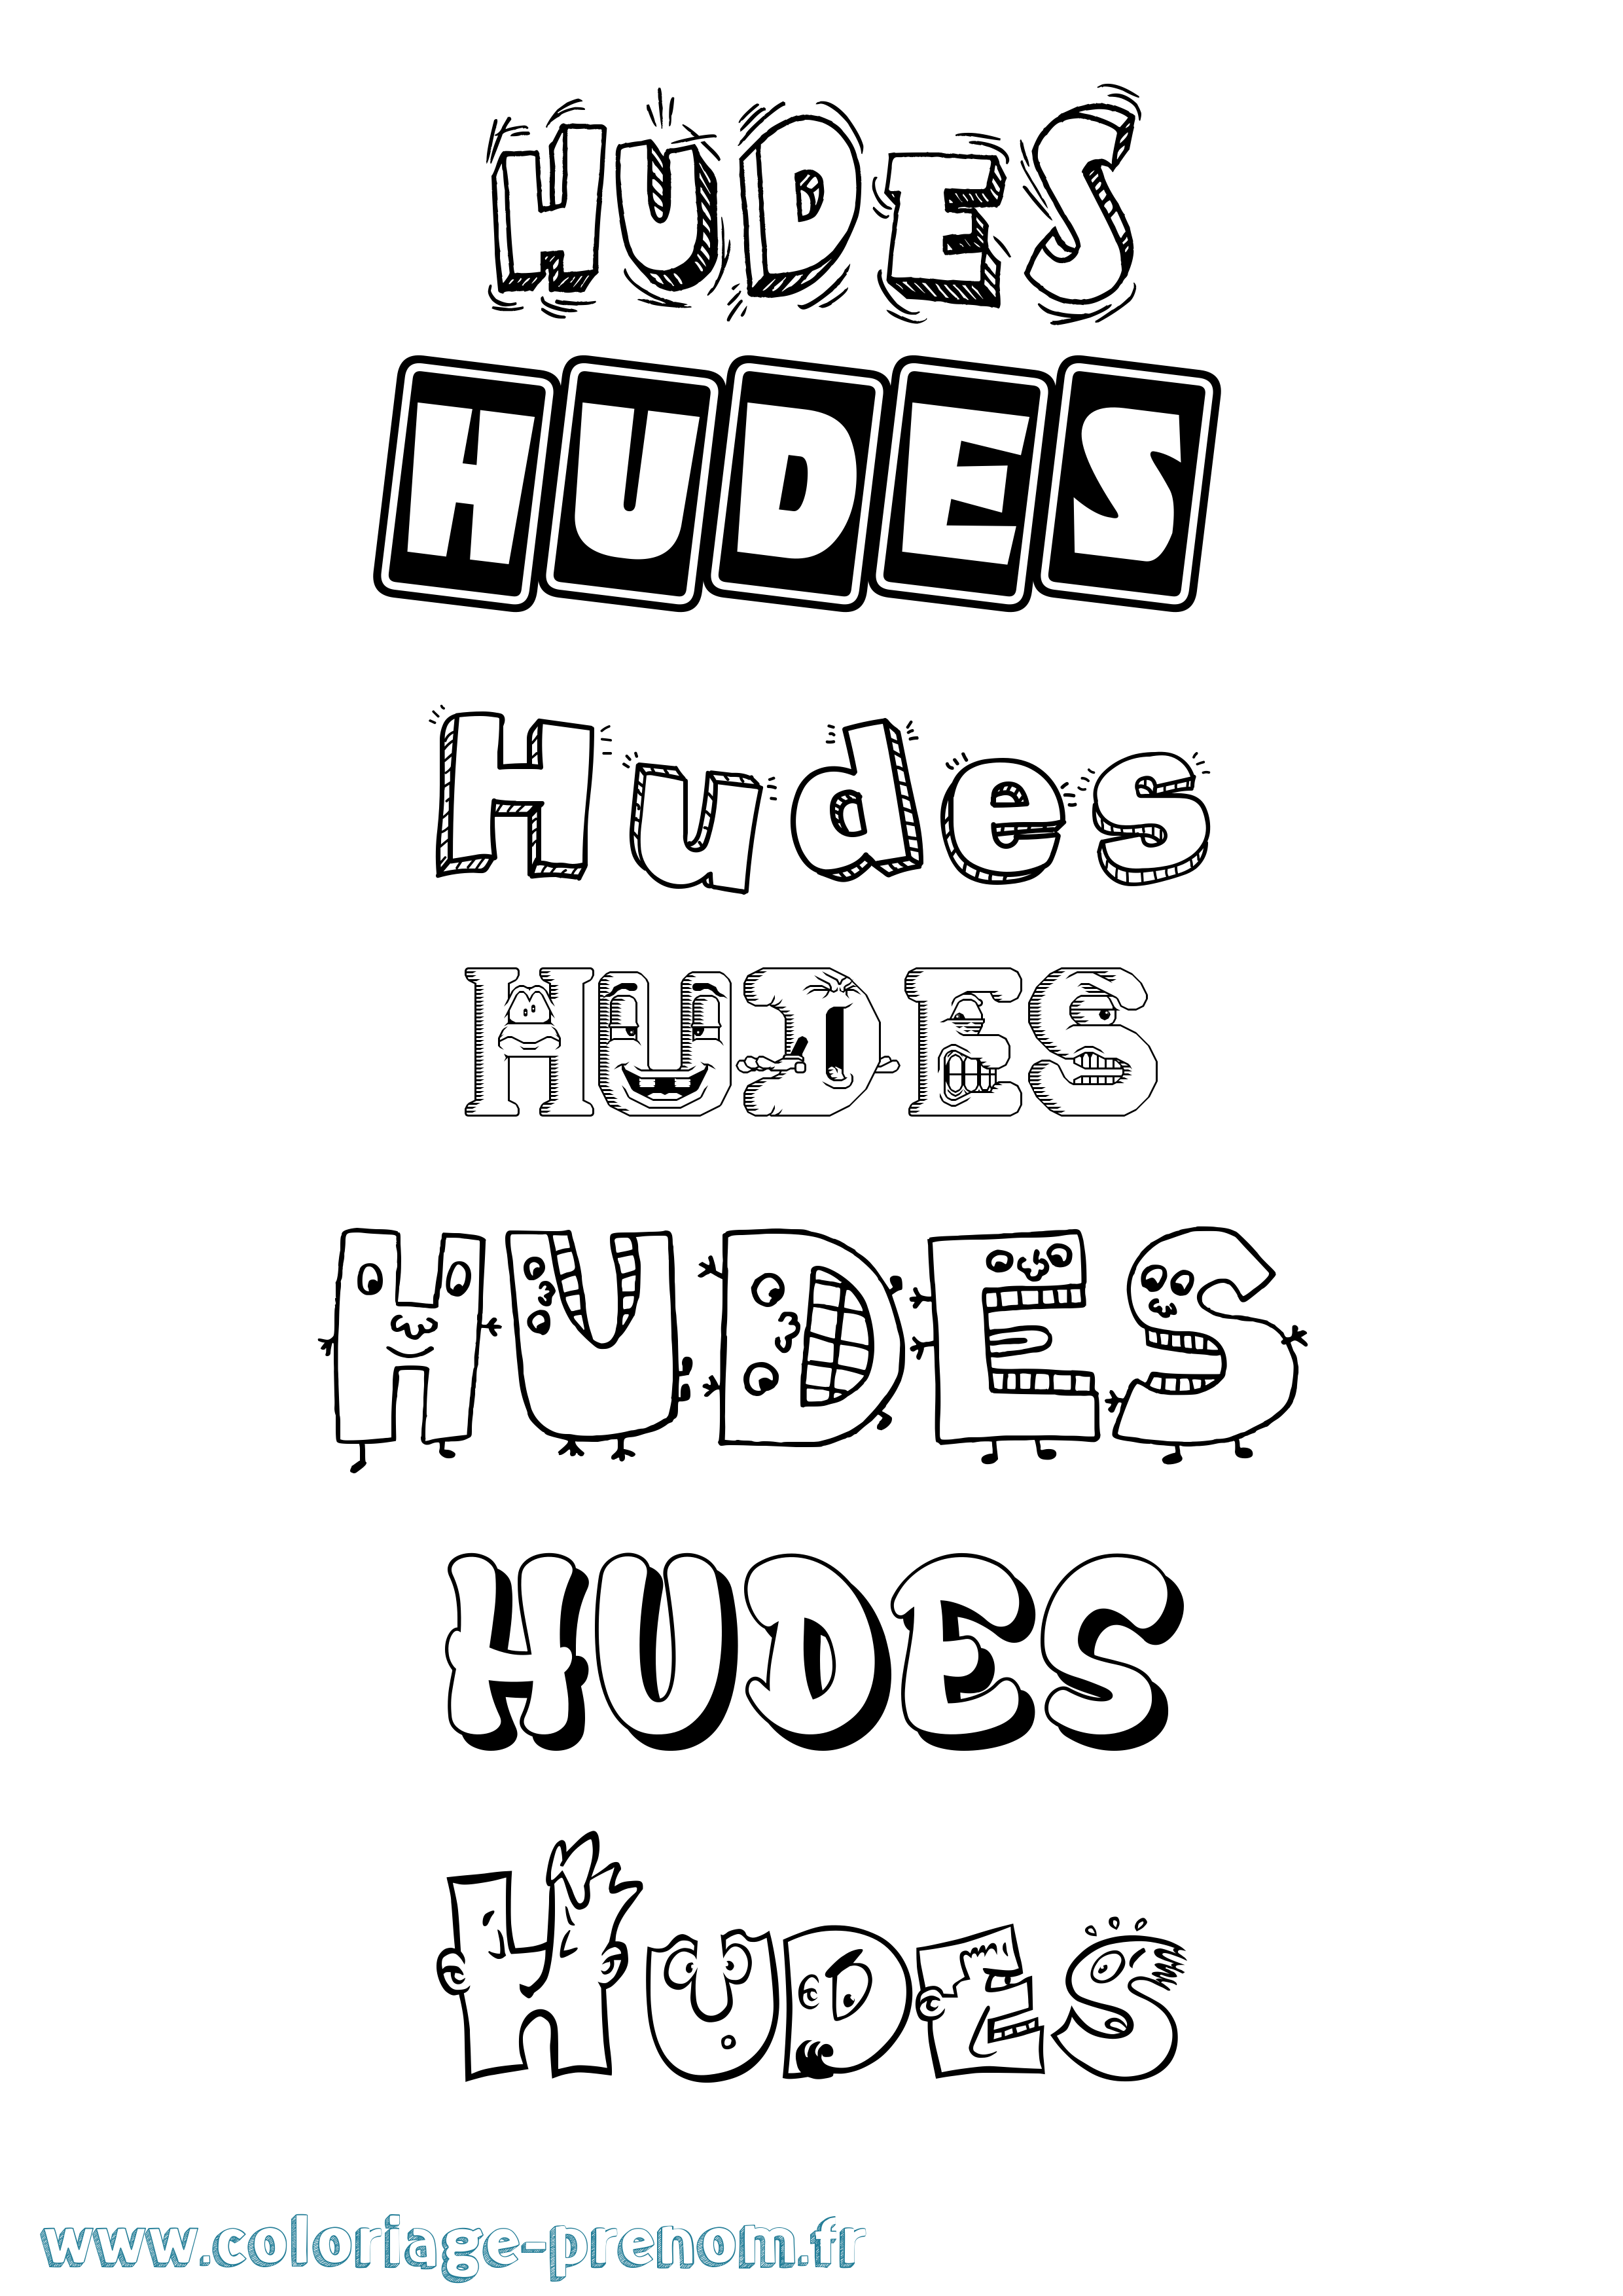 Coloriage prénom Hudes Fun